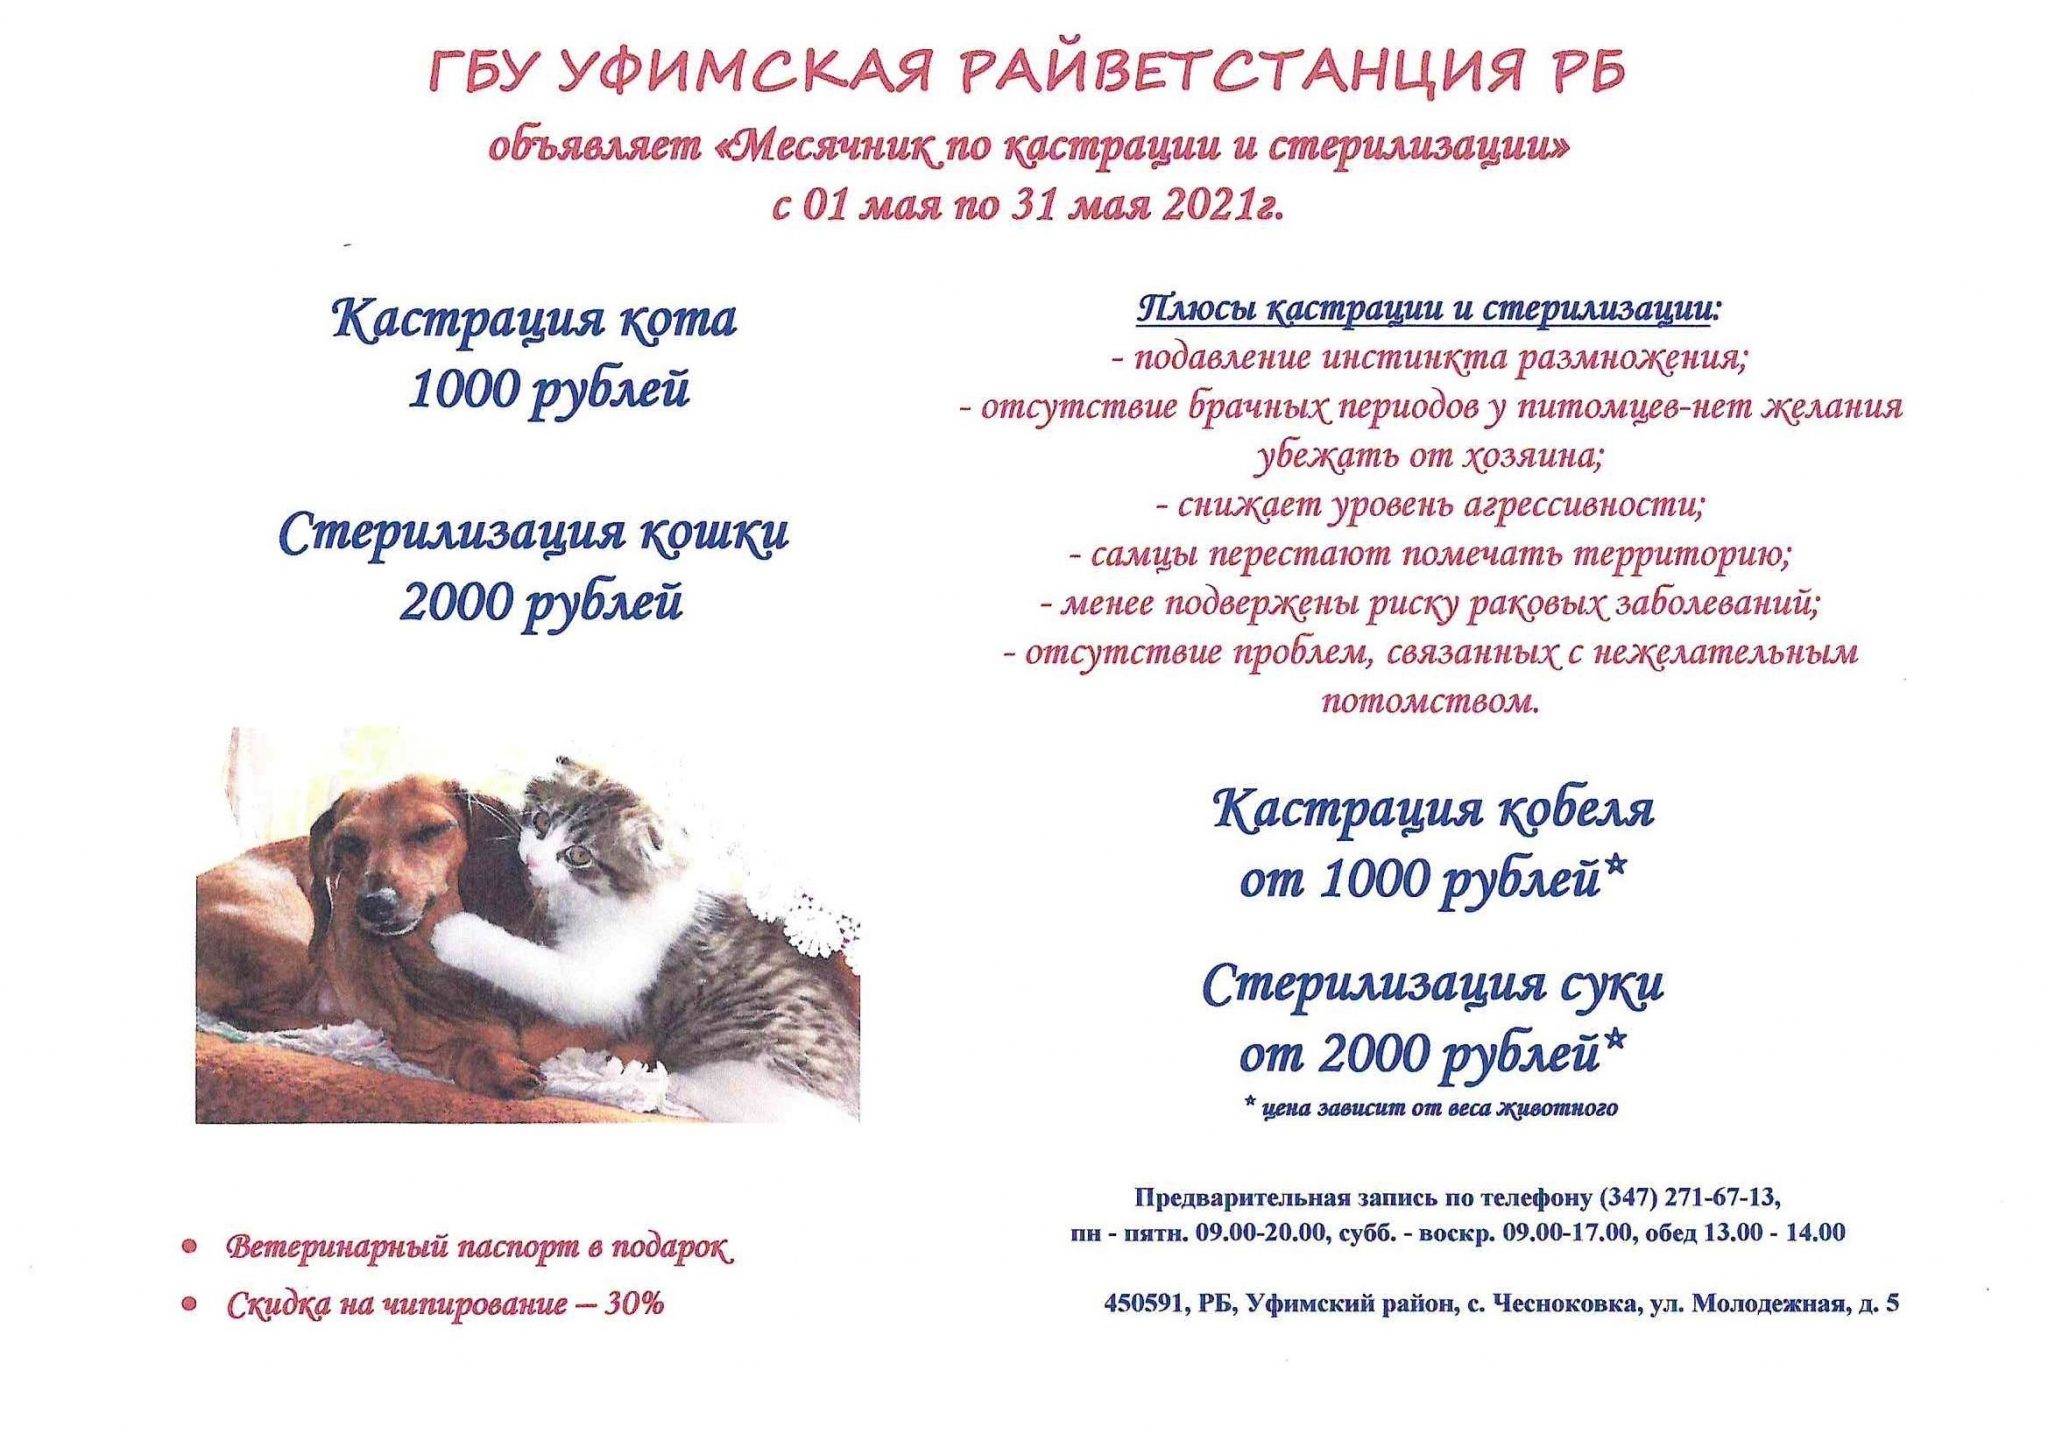 Химическая (медикаментозная) кастрация собак и котов в москве, цены в сети ветеринарных клиник